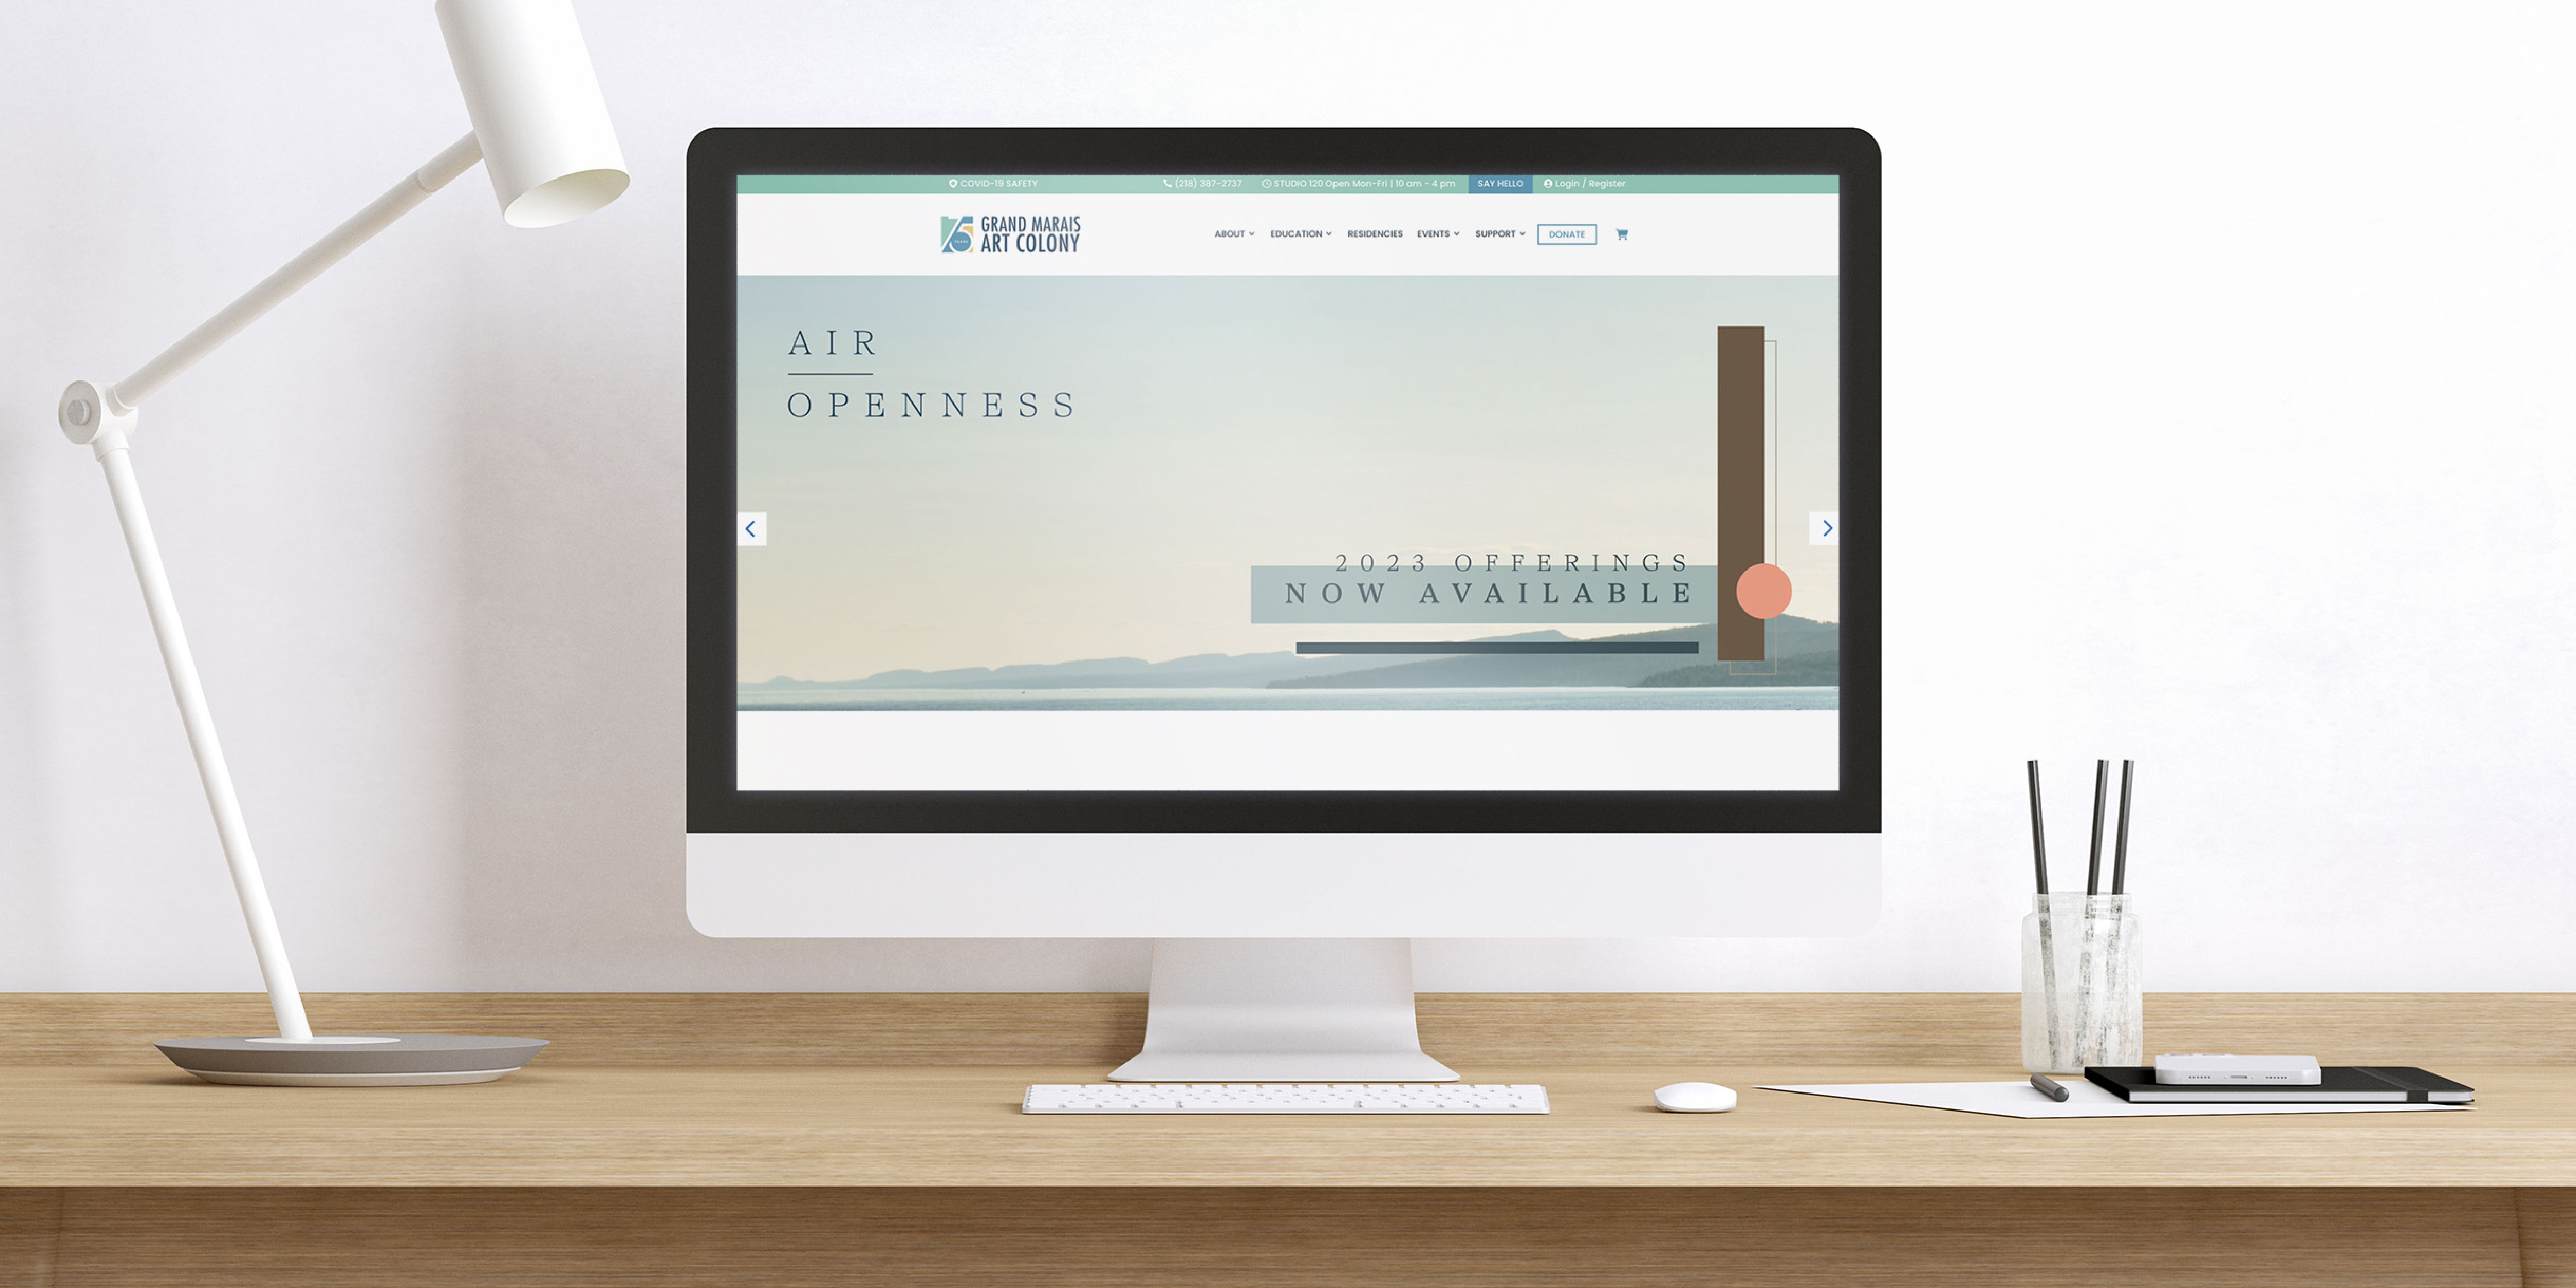 Grand Marais Art Colony website homepage, website design and development by Šek Design Studio